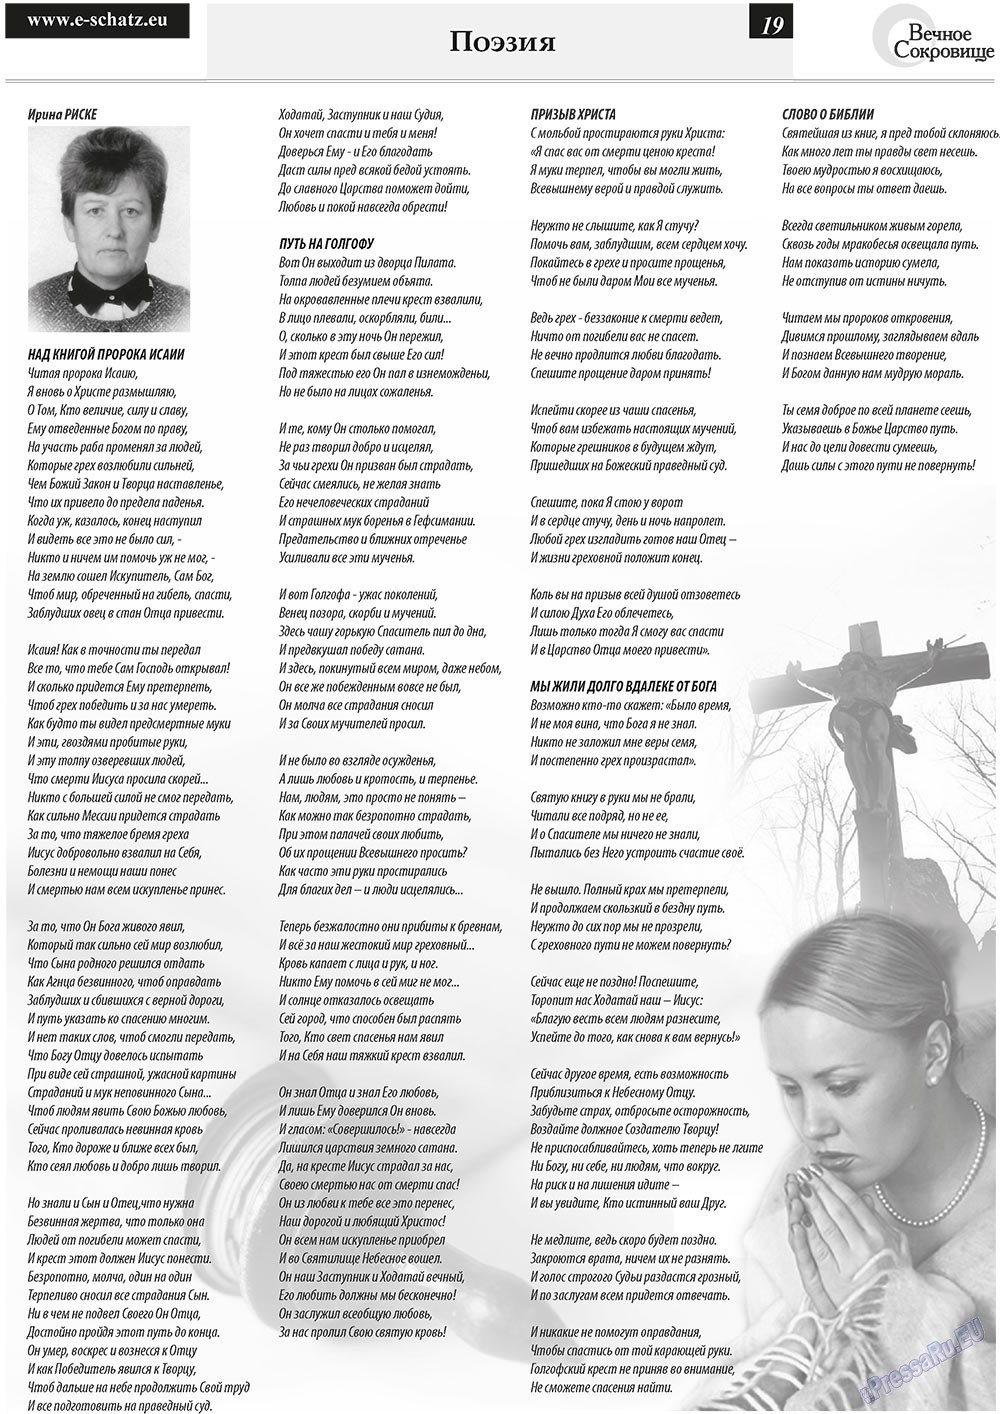 Вечное сокровище, газета. 2011 №1 стр.19